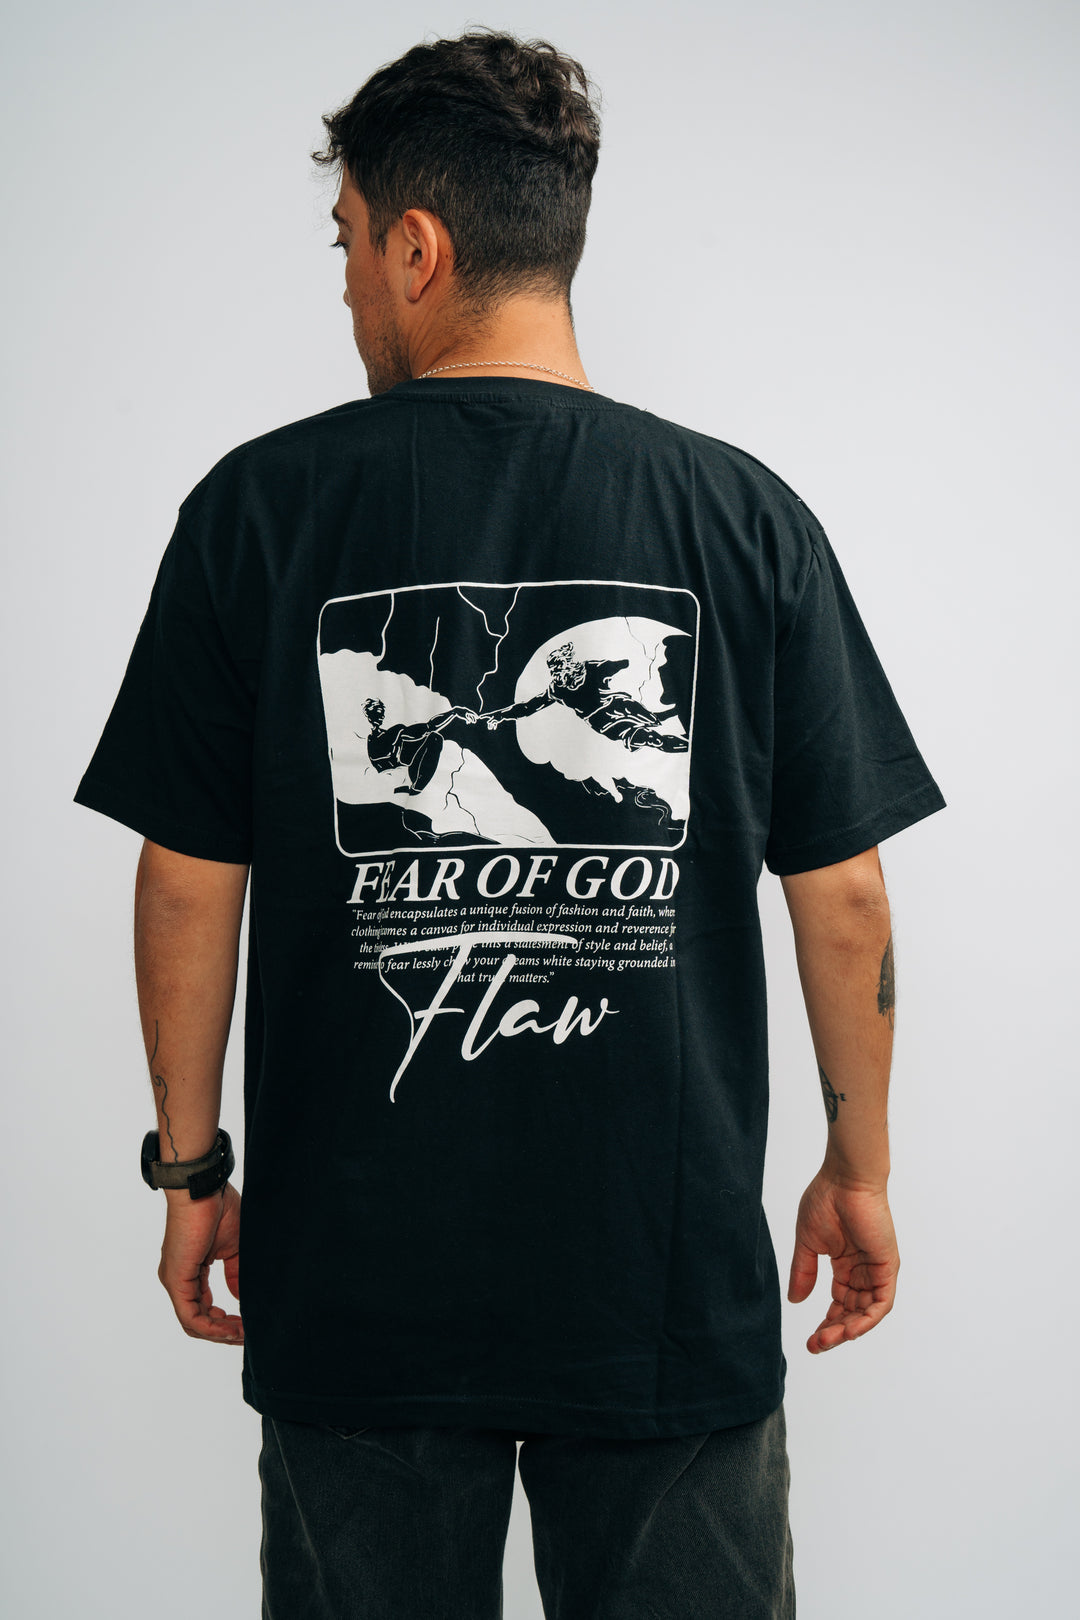 Flaw Fear of God T-Shirt Black